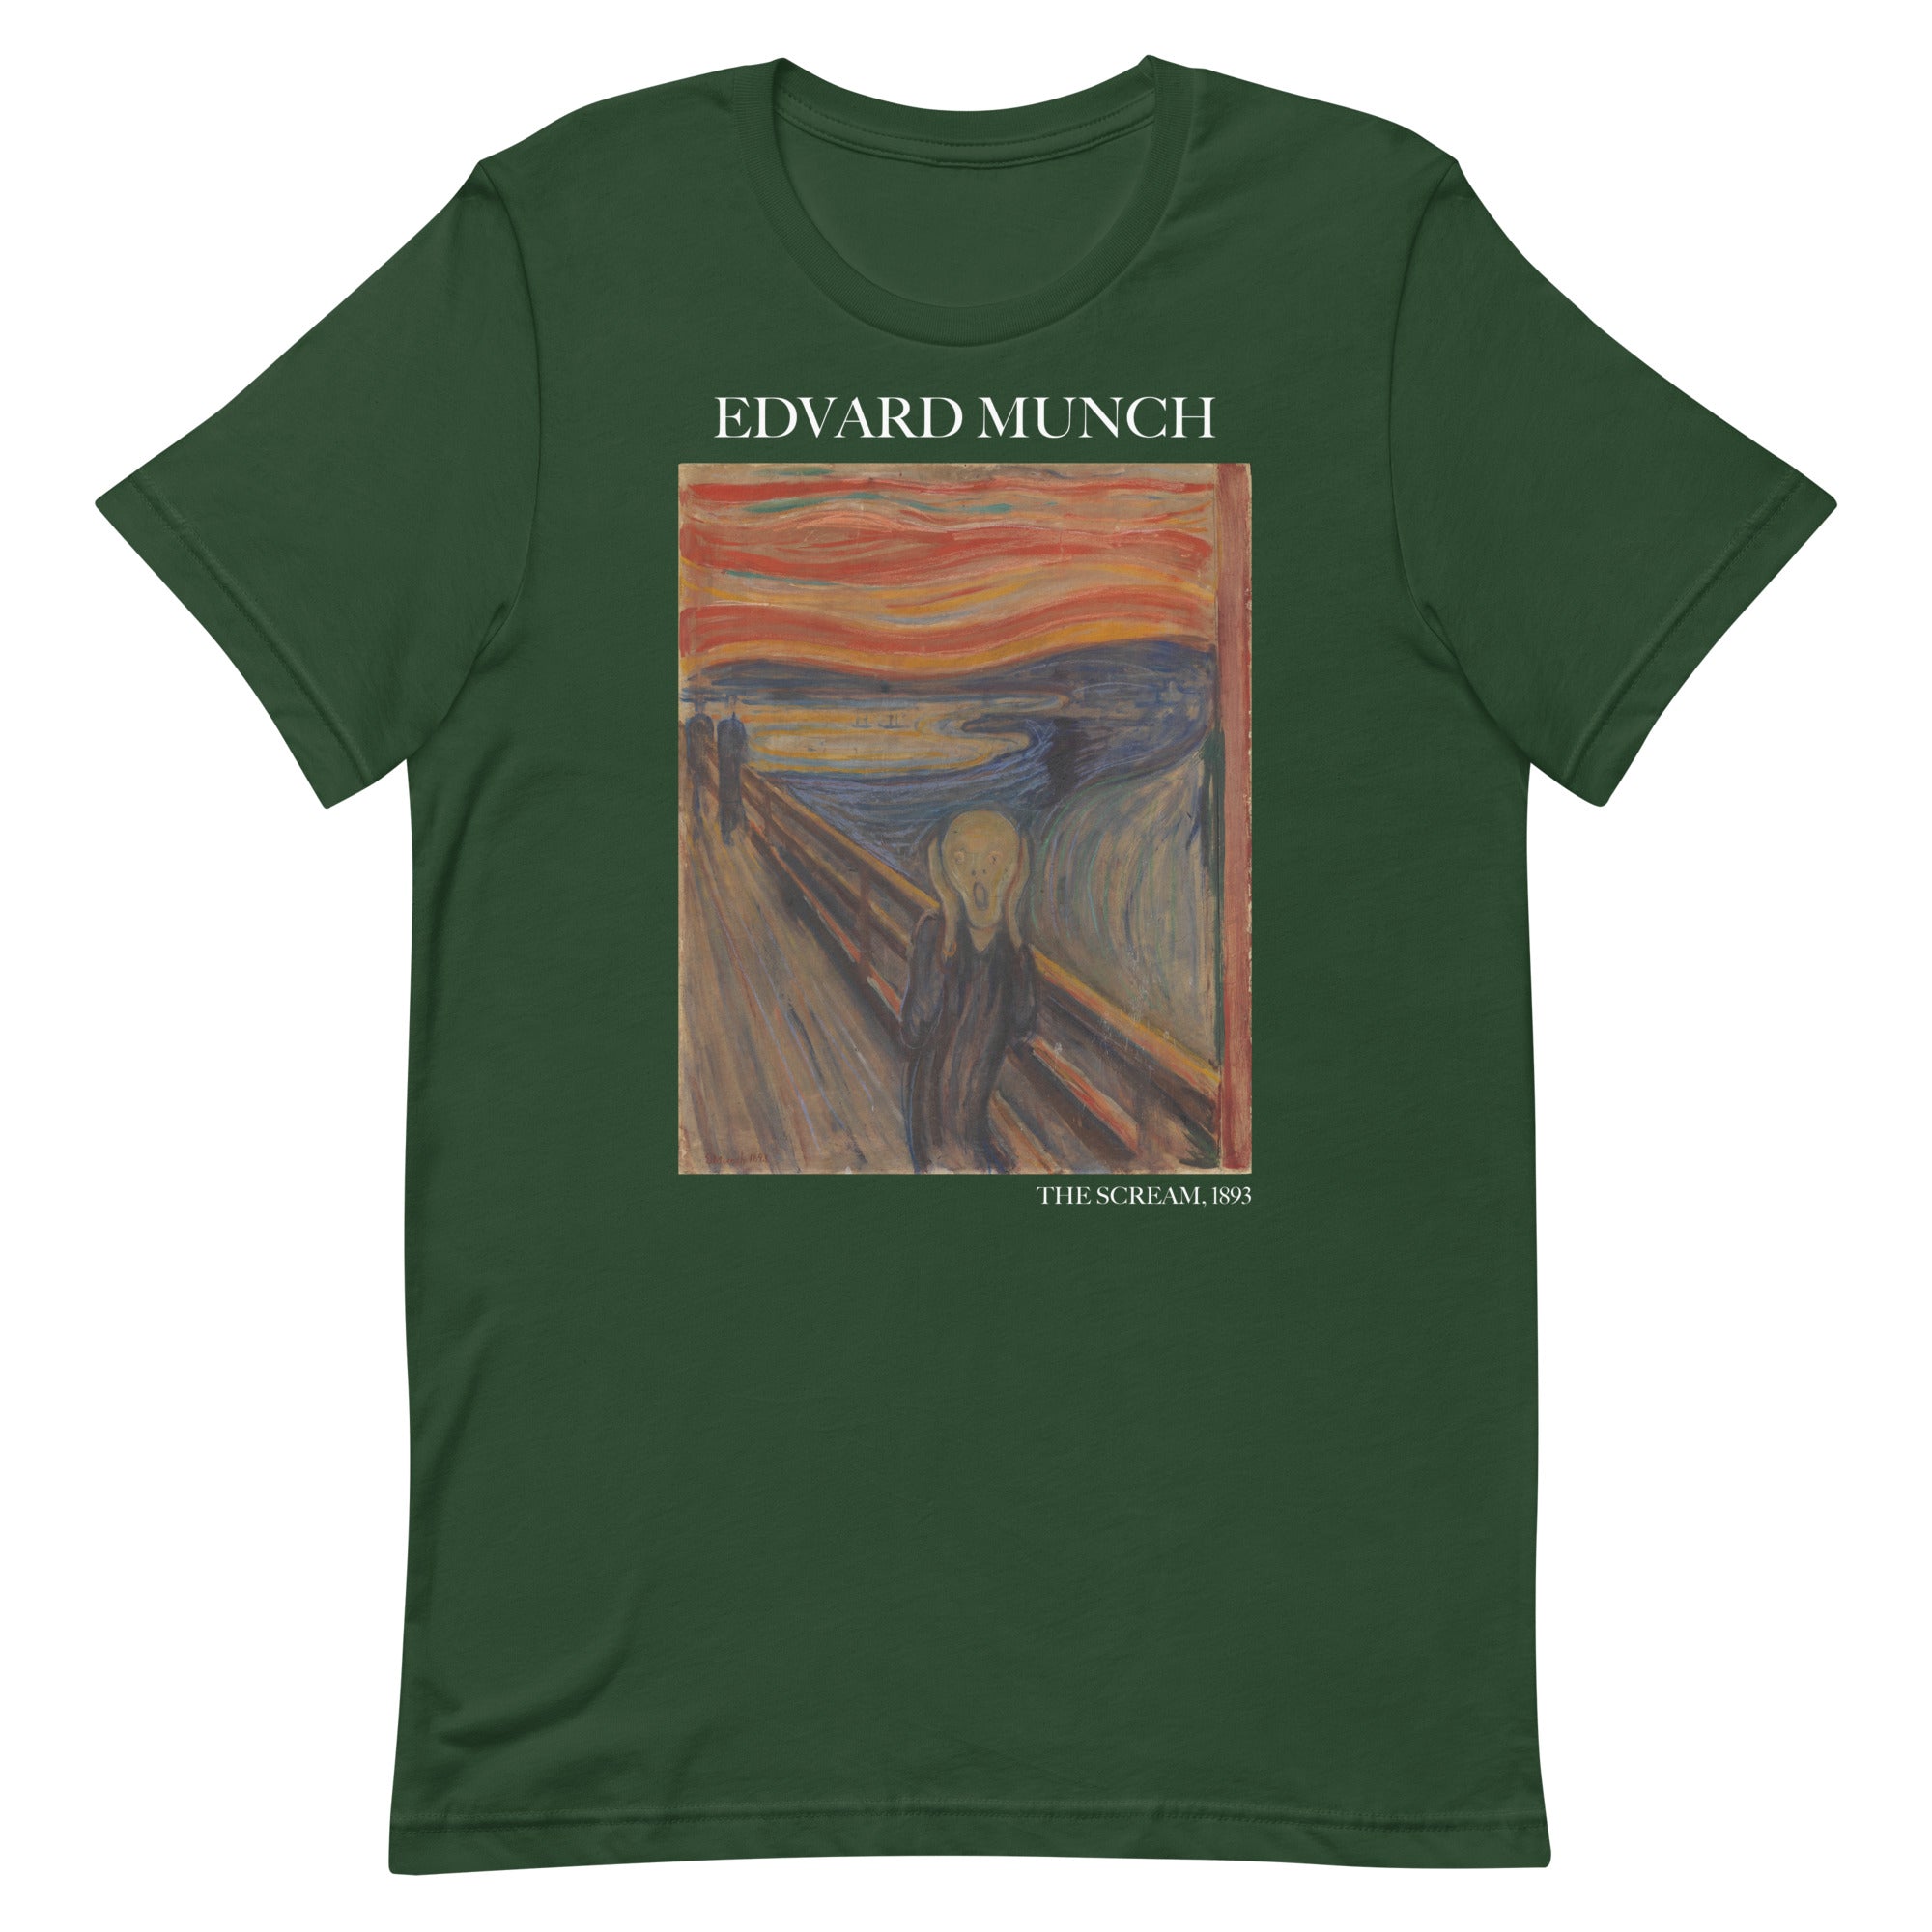 T-Shirt mit dem berühmten Gemälde „Der Schrei“ von Edvard Munch | Unisex-T-Shirt im klassischen Kunststil